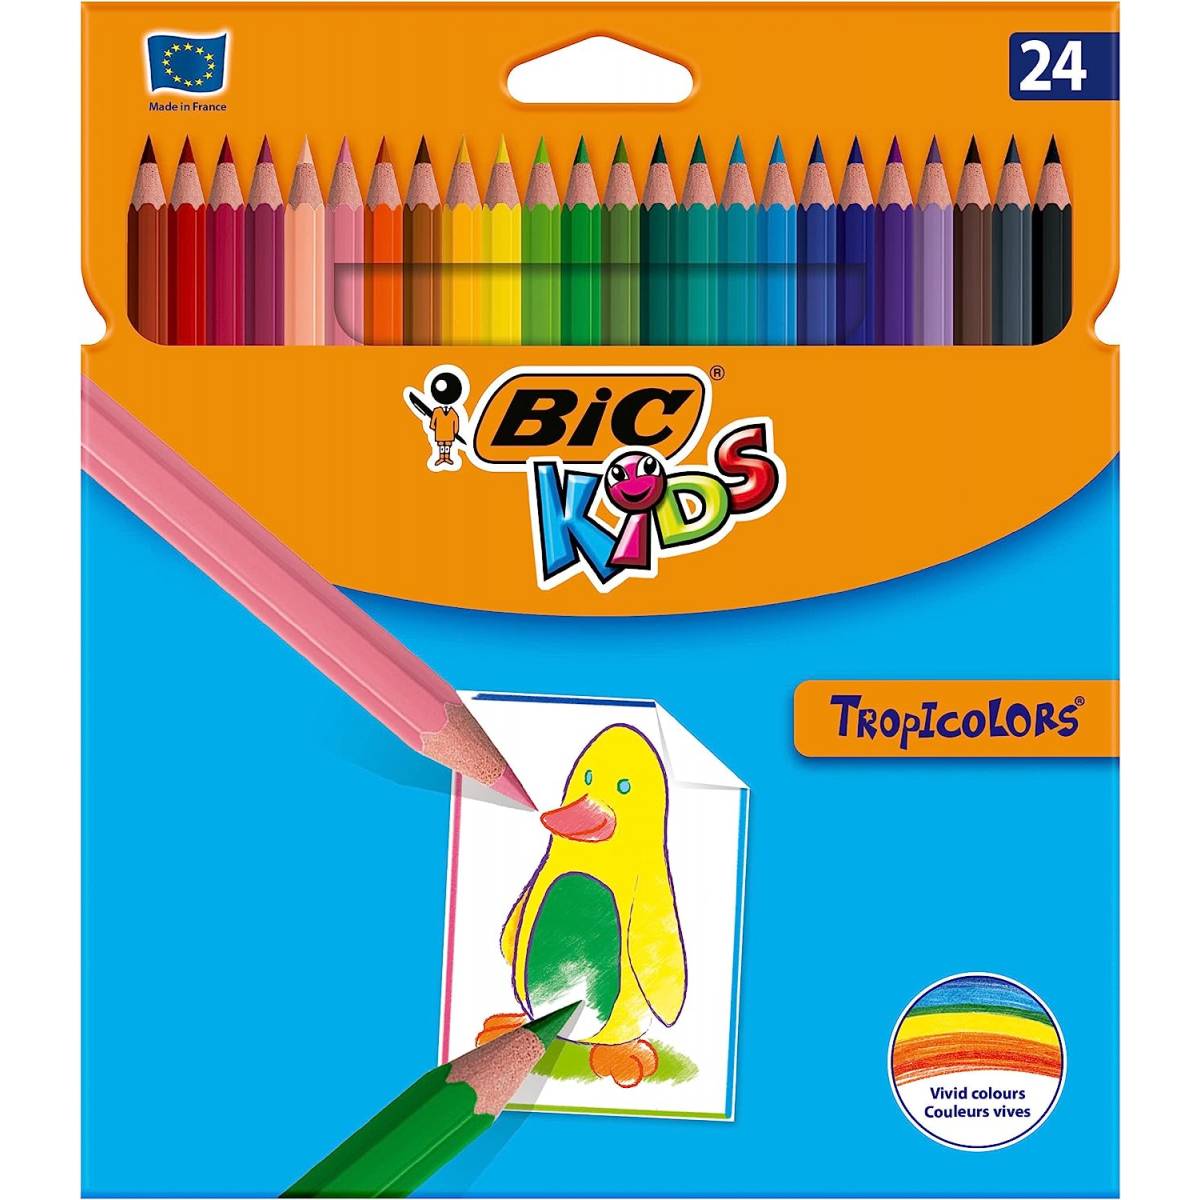 Crayons de Couleurs BIC kids Tropicolors 24